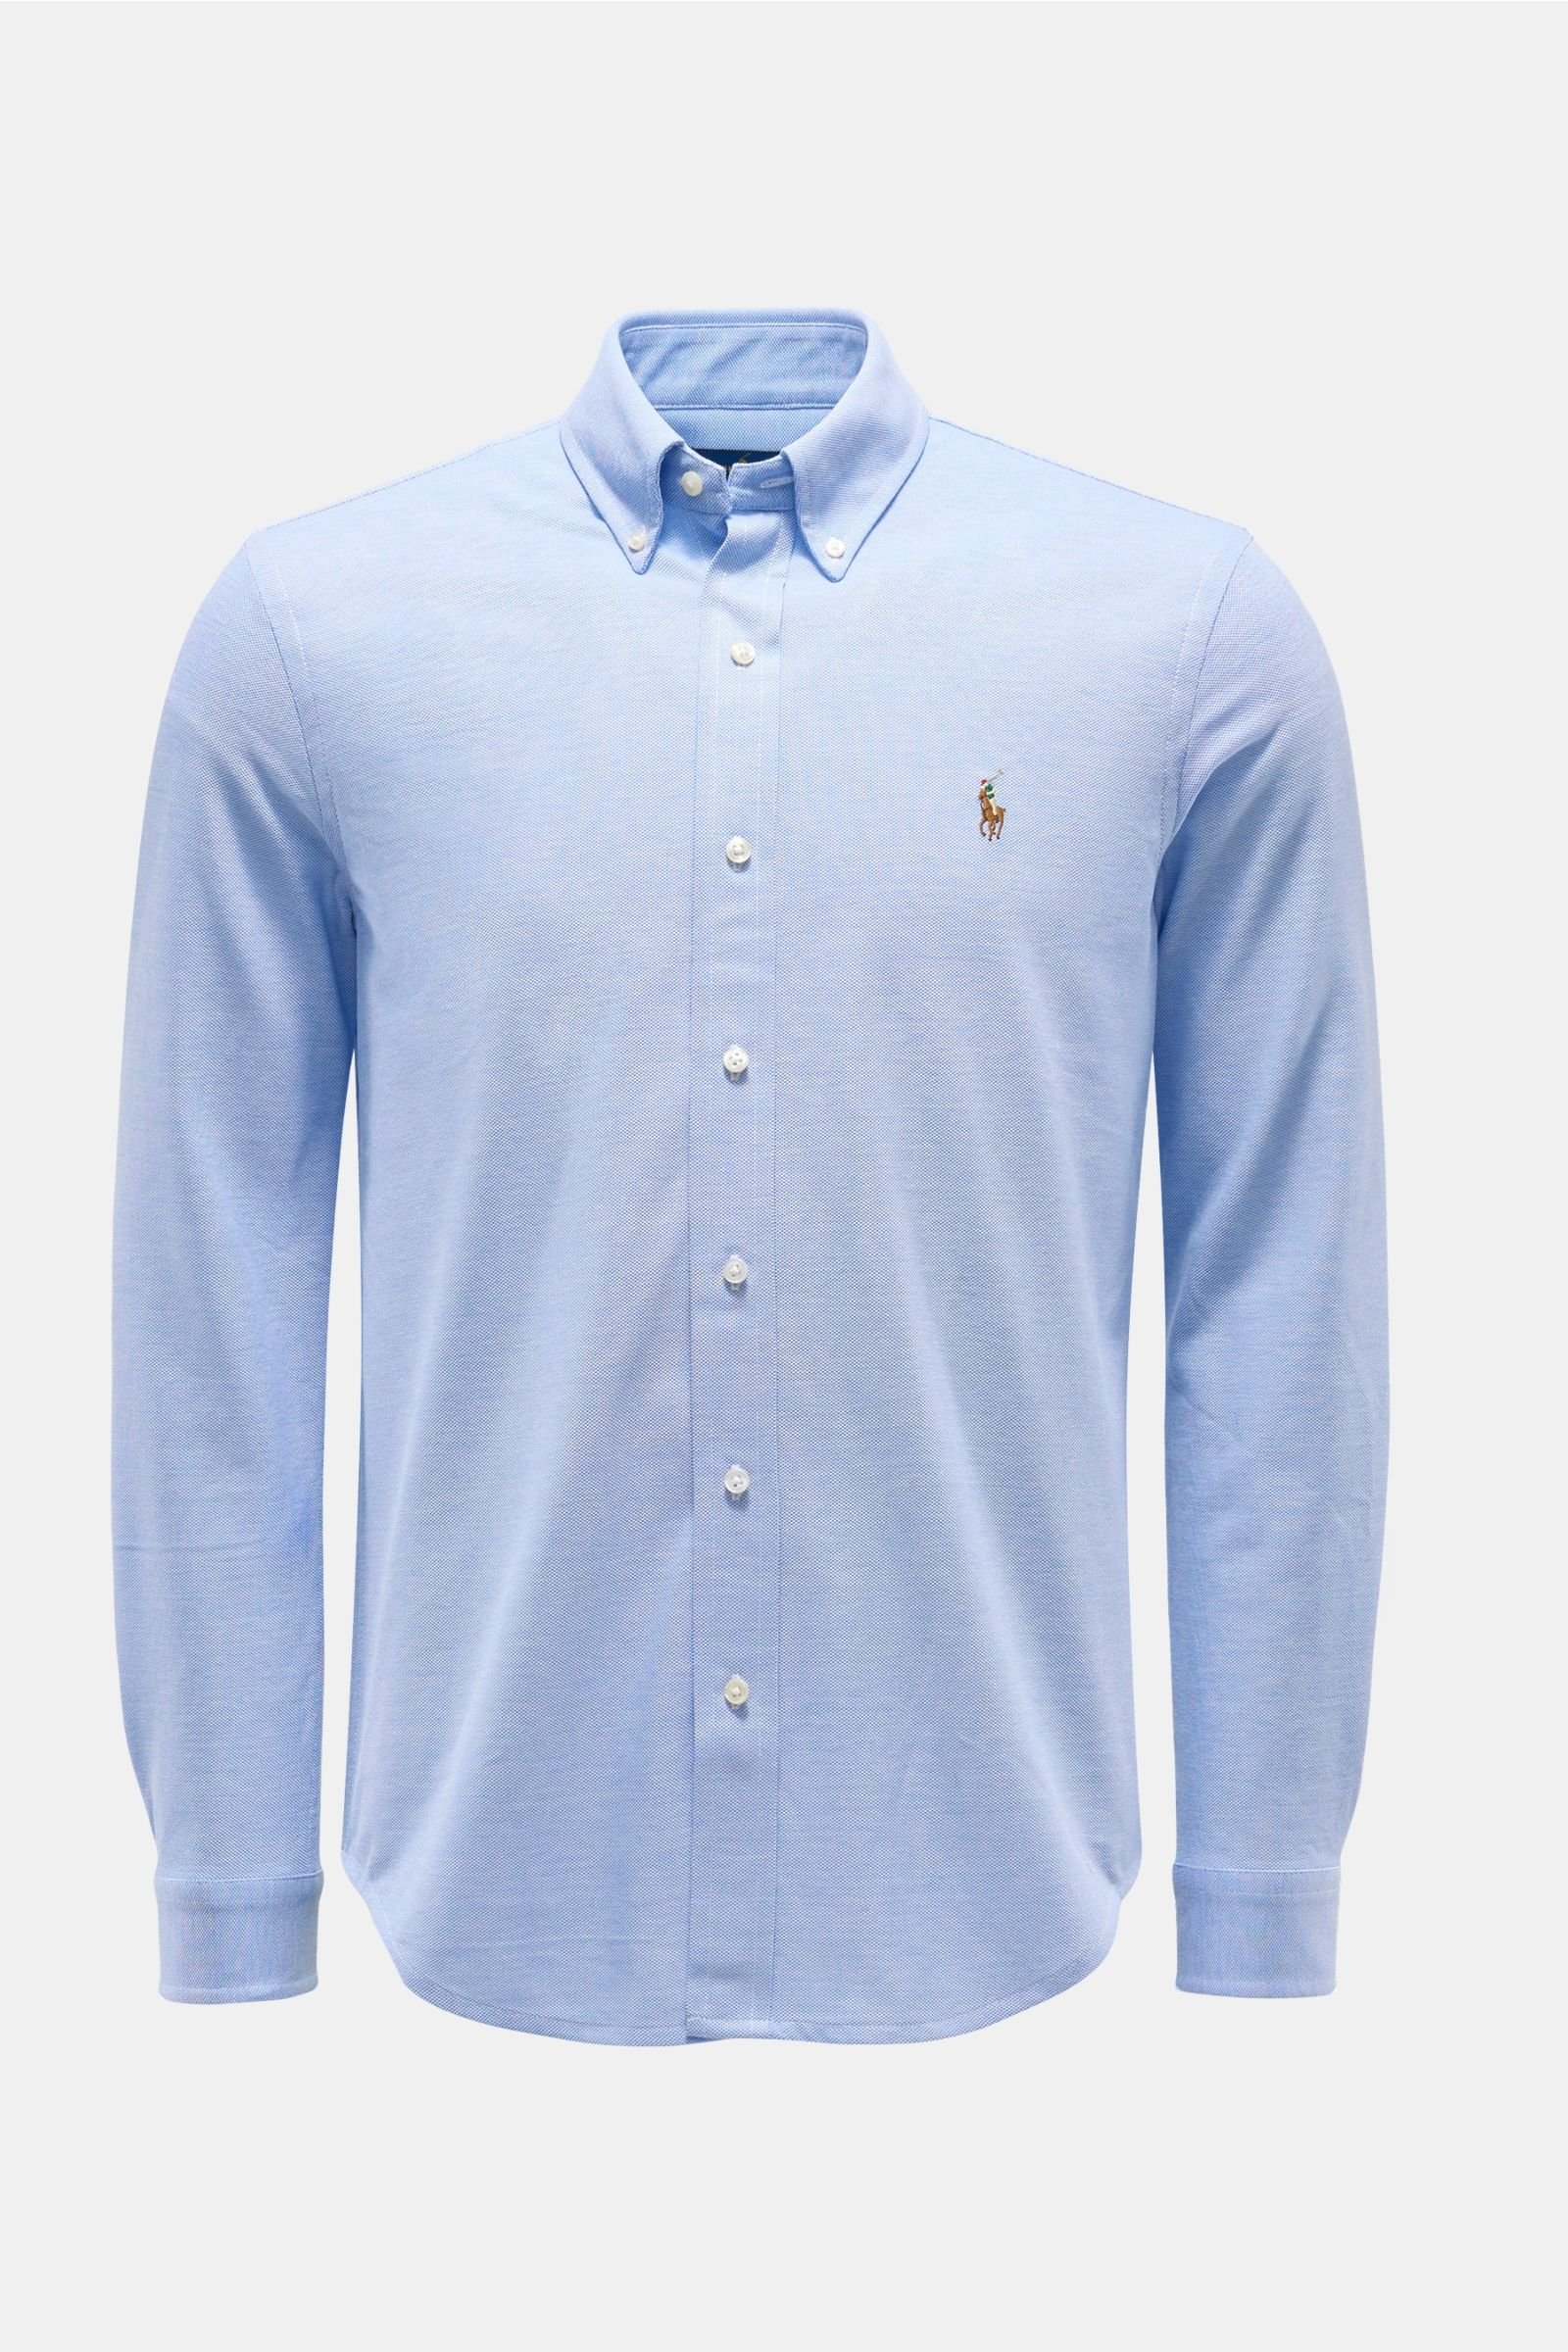 Oxford shirt button-down collar smoky blue